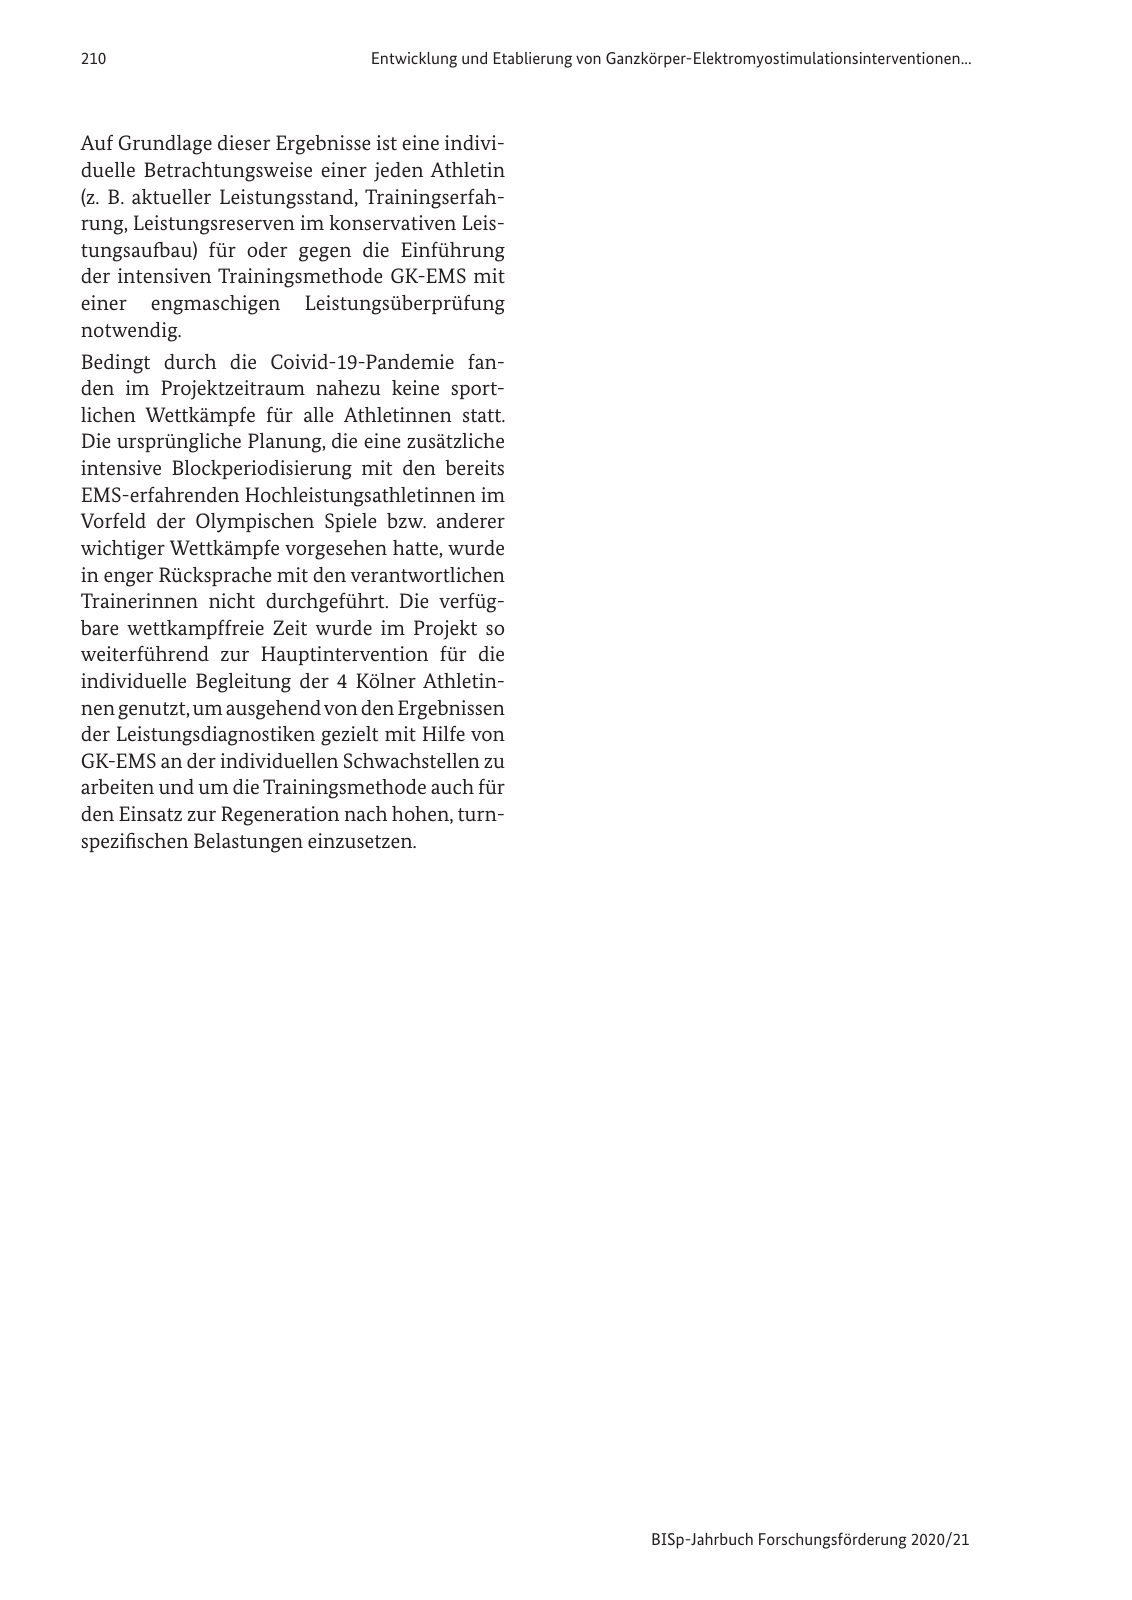 Vorschau BISp-Jahrbuch 2020/21 Seite 212